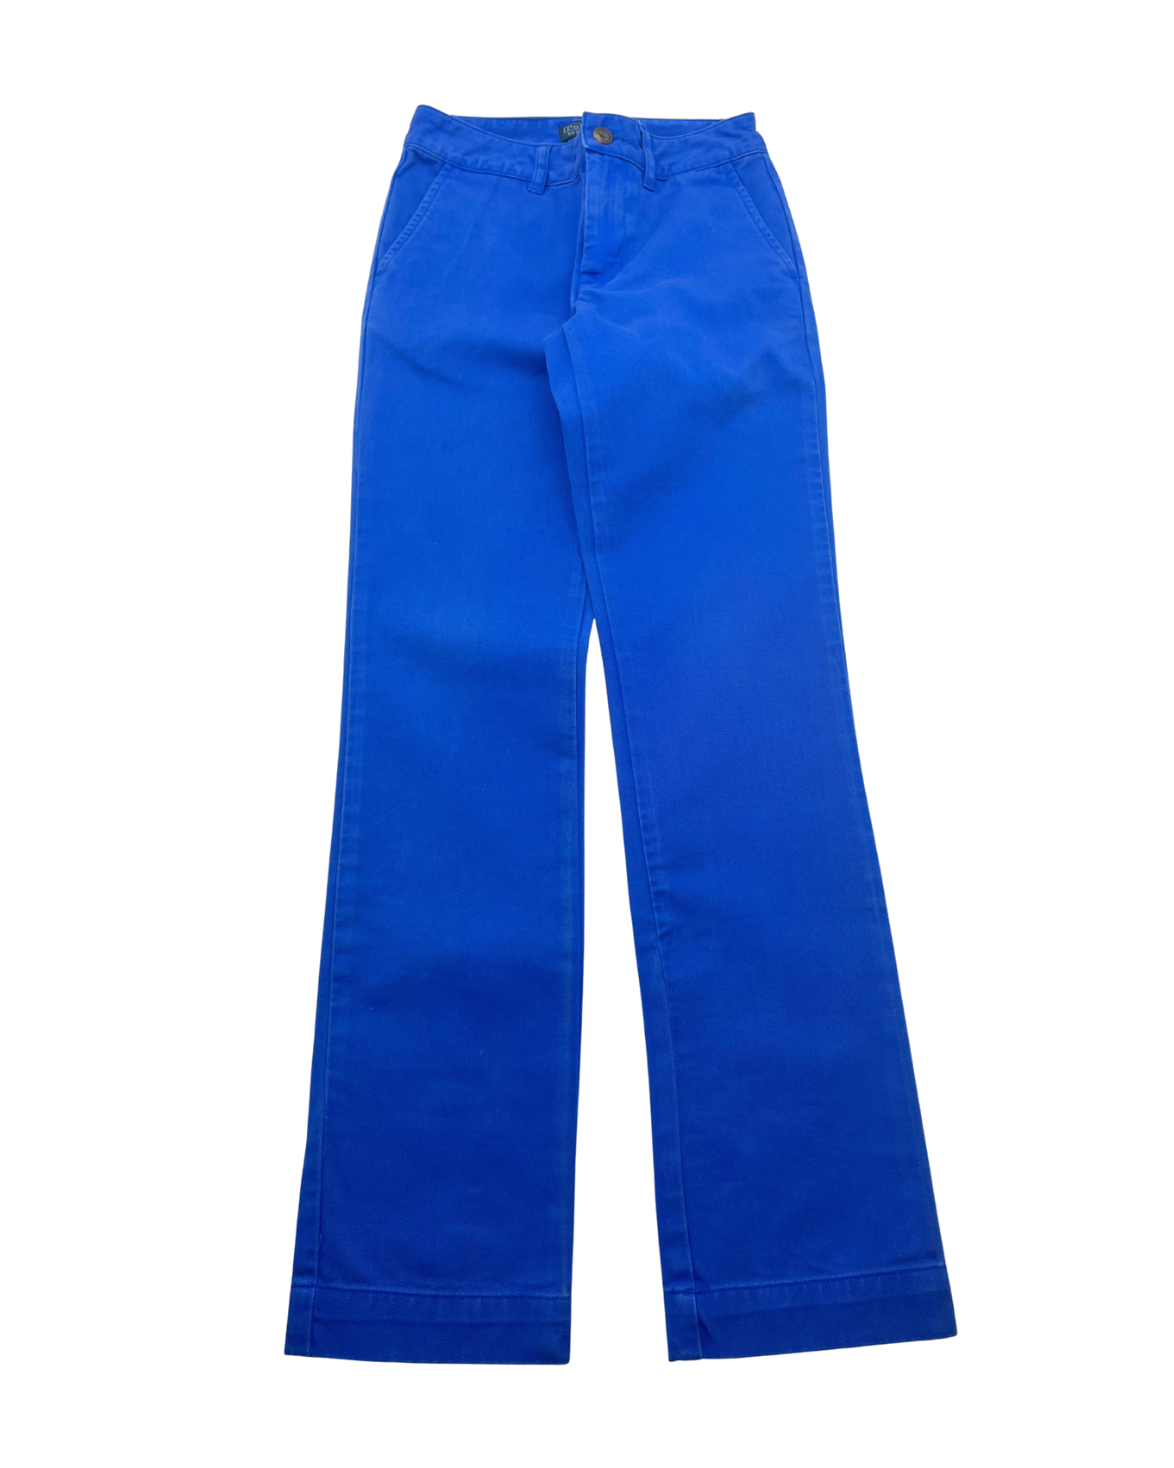 RALPH LAUREN - Pantalon bleu - 8 ans